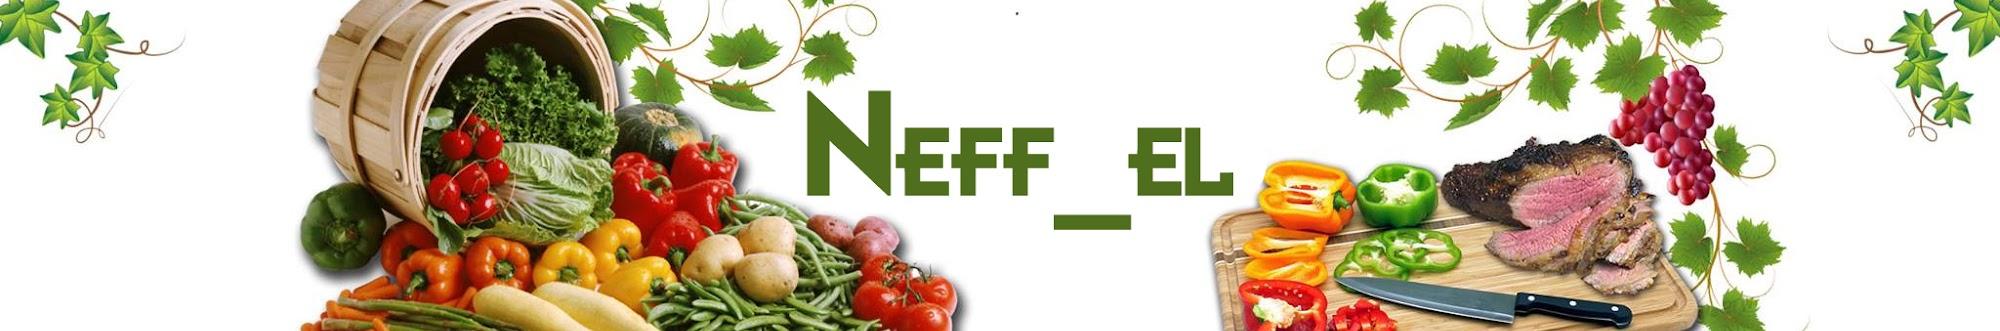 Neff_el Bulut